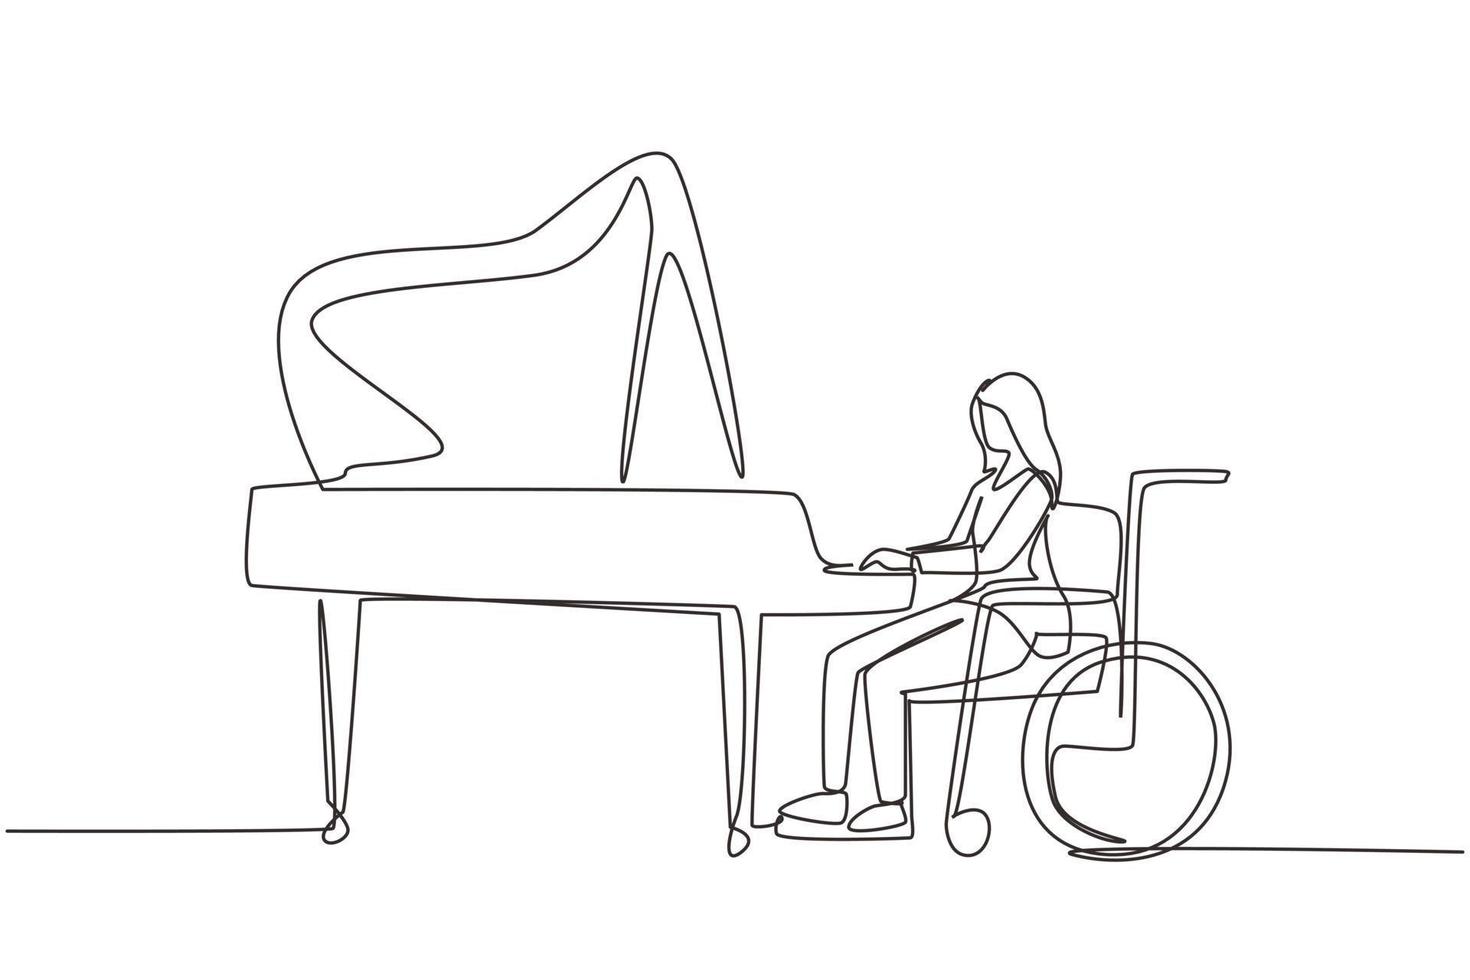 kontinuerlig en rad ritning funktionshindrade vacker kvinna i rullstol spelar piano i konsert. funktionshinder och klassisk musik. fysiskt handikappad. enda rad rita design vektorgrafisk illustration vektor